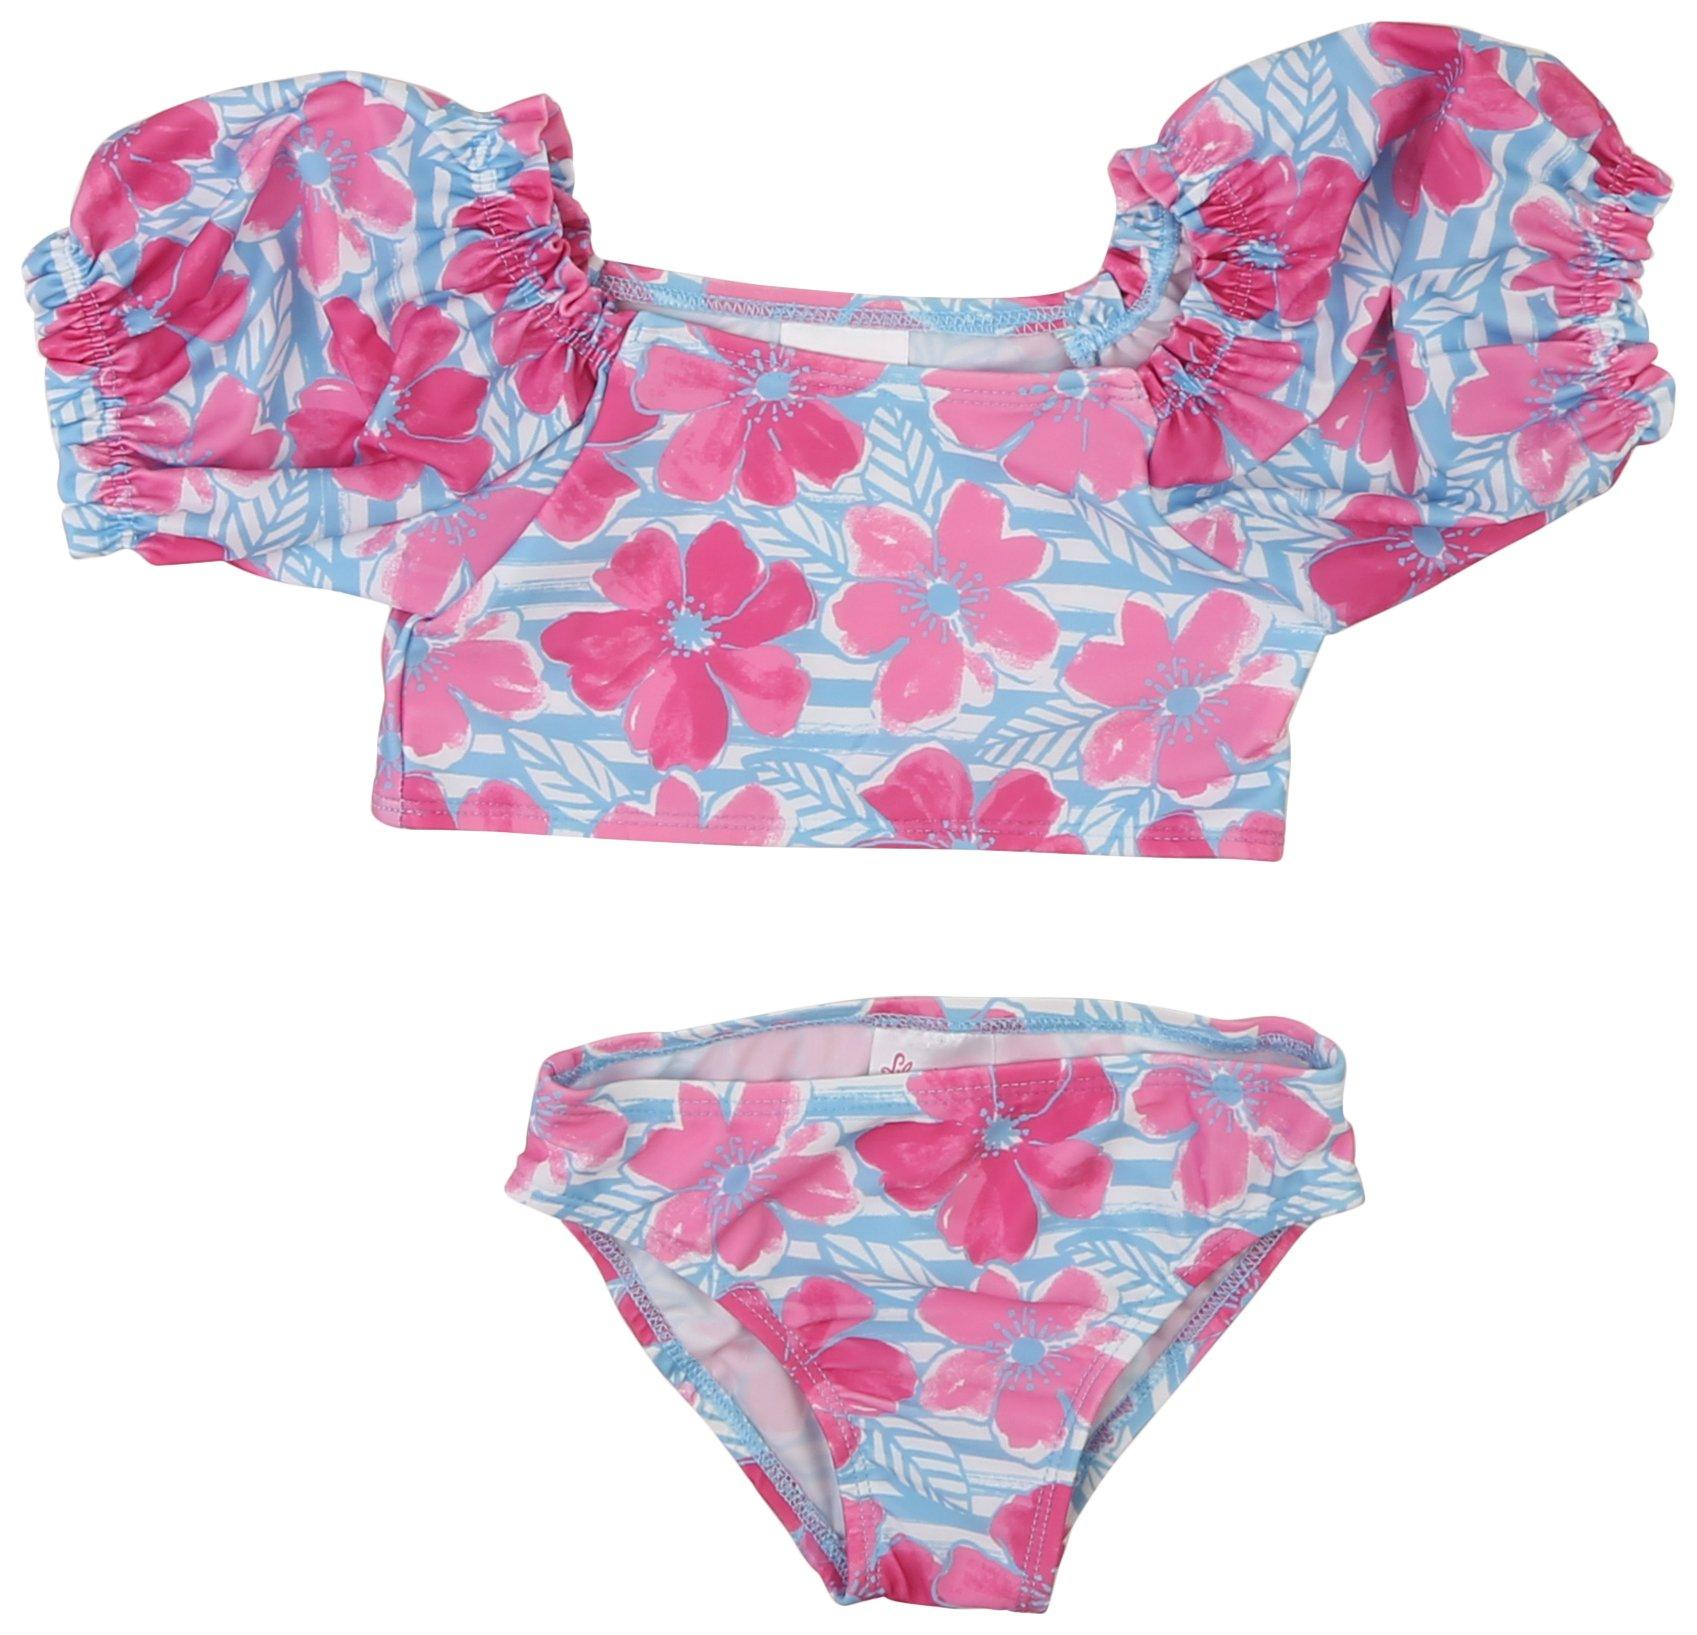 Toddler Girls 2 Pc Floral Bikini Swimsuit